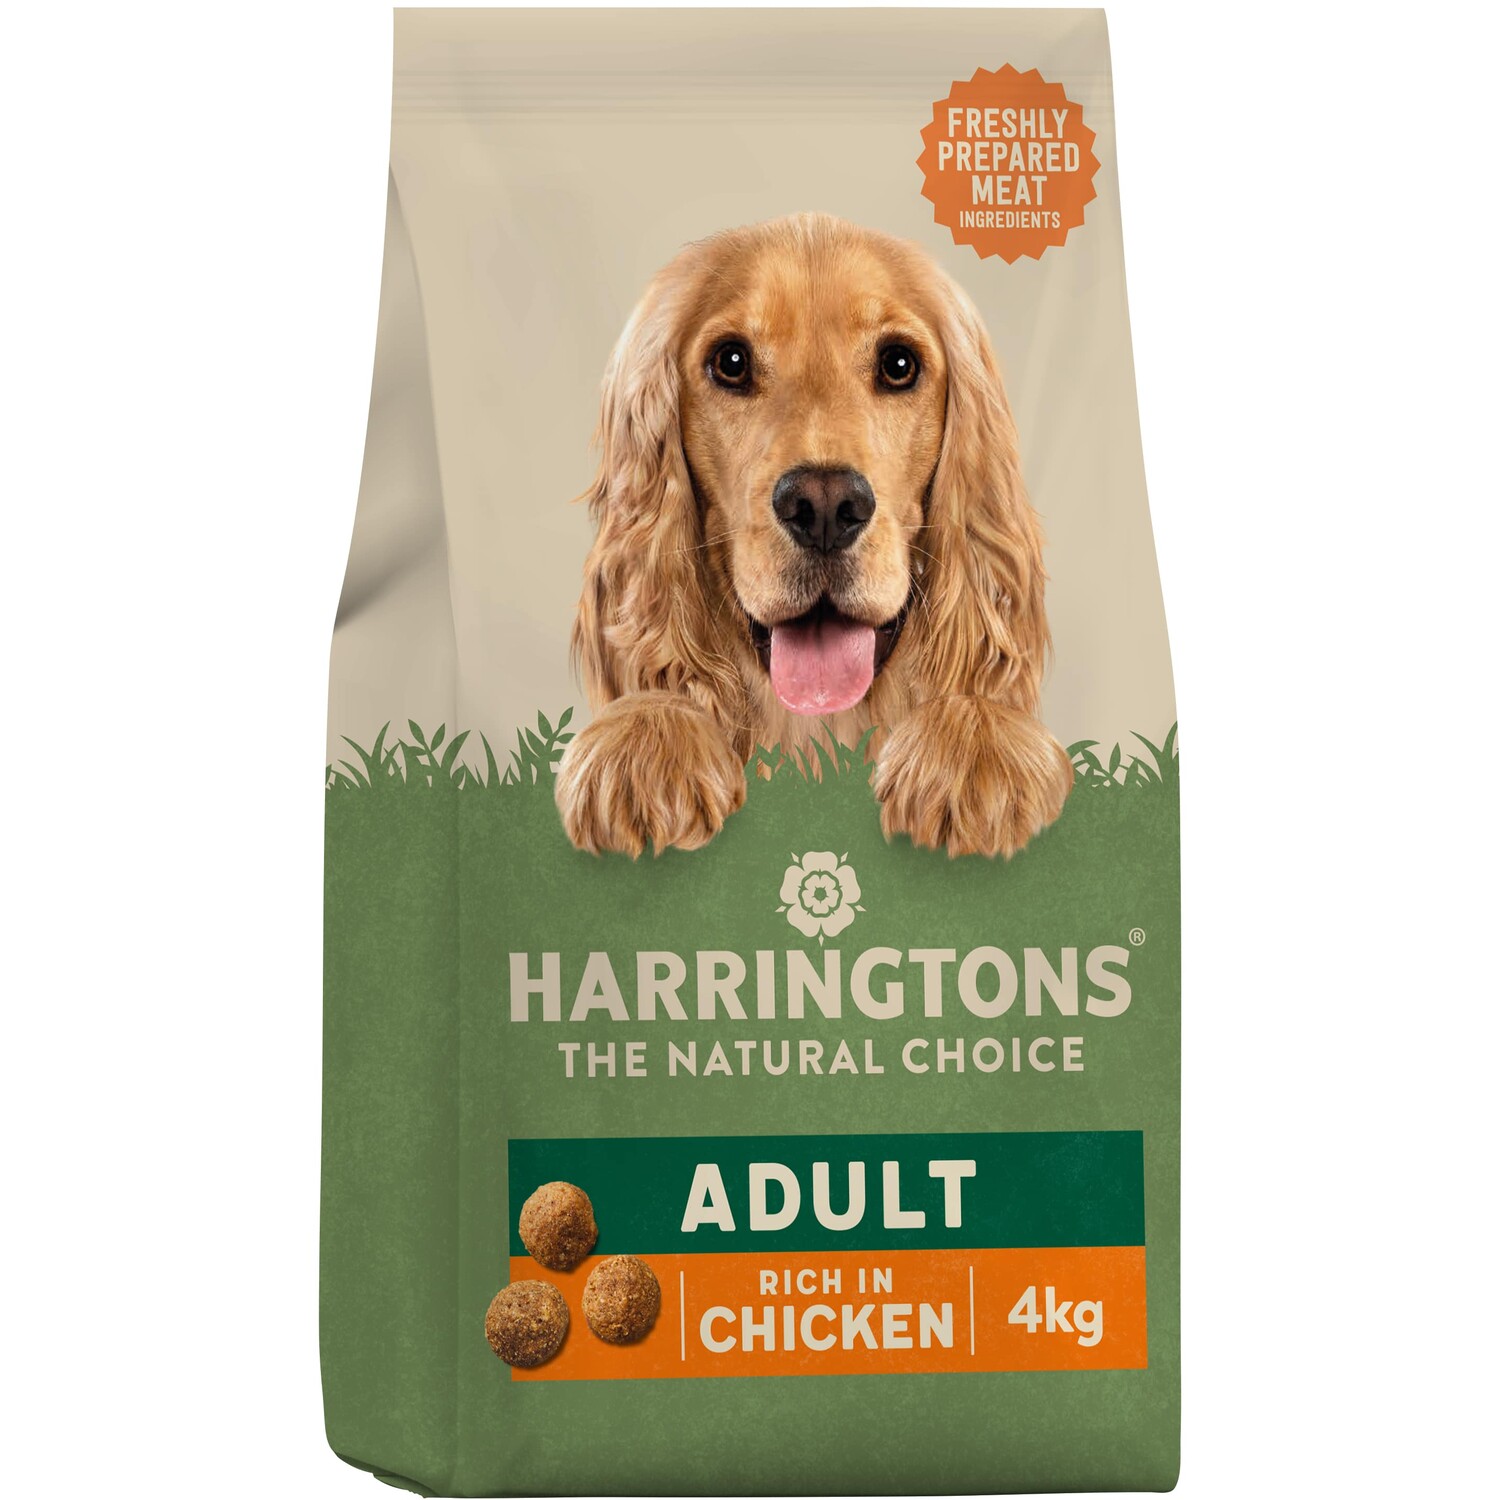 Harringtons Chicken Dry Adult Dog Food 4kg Image